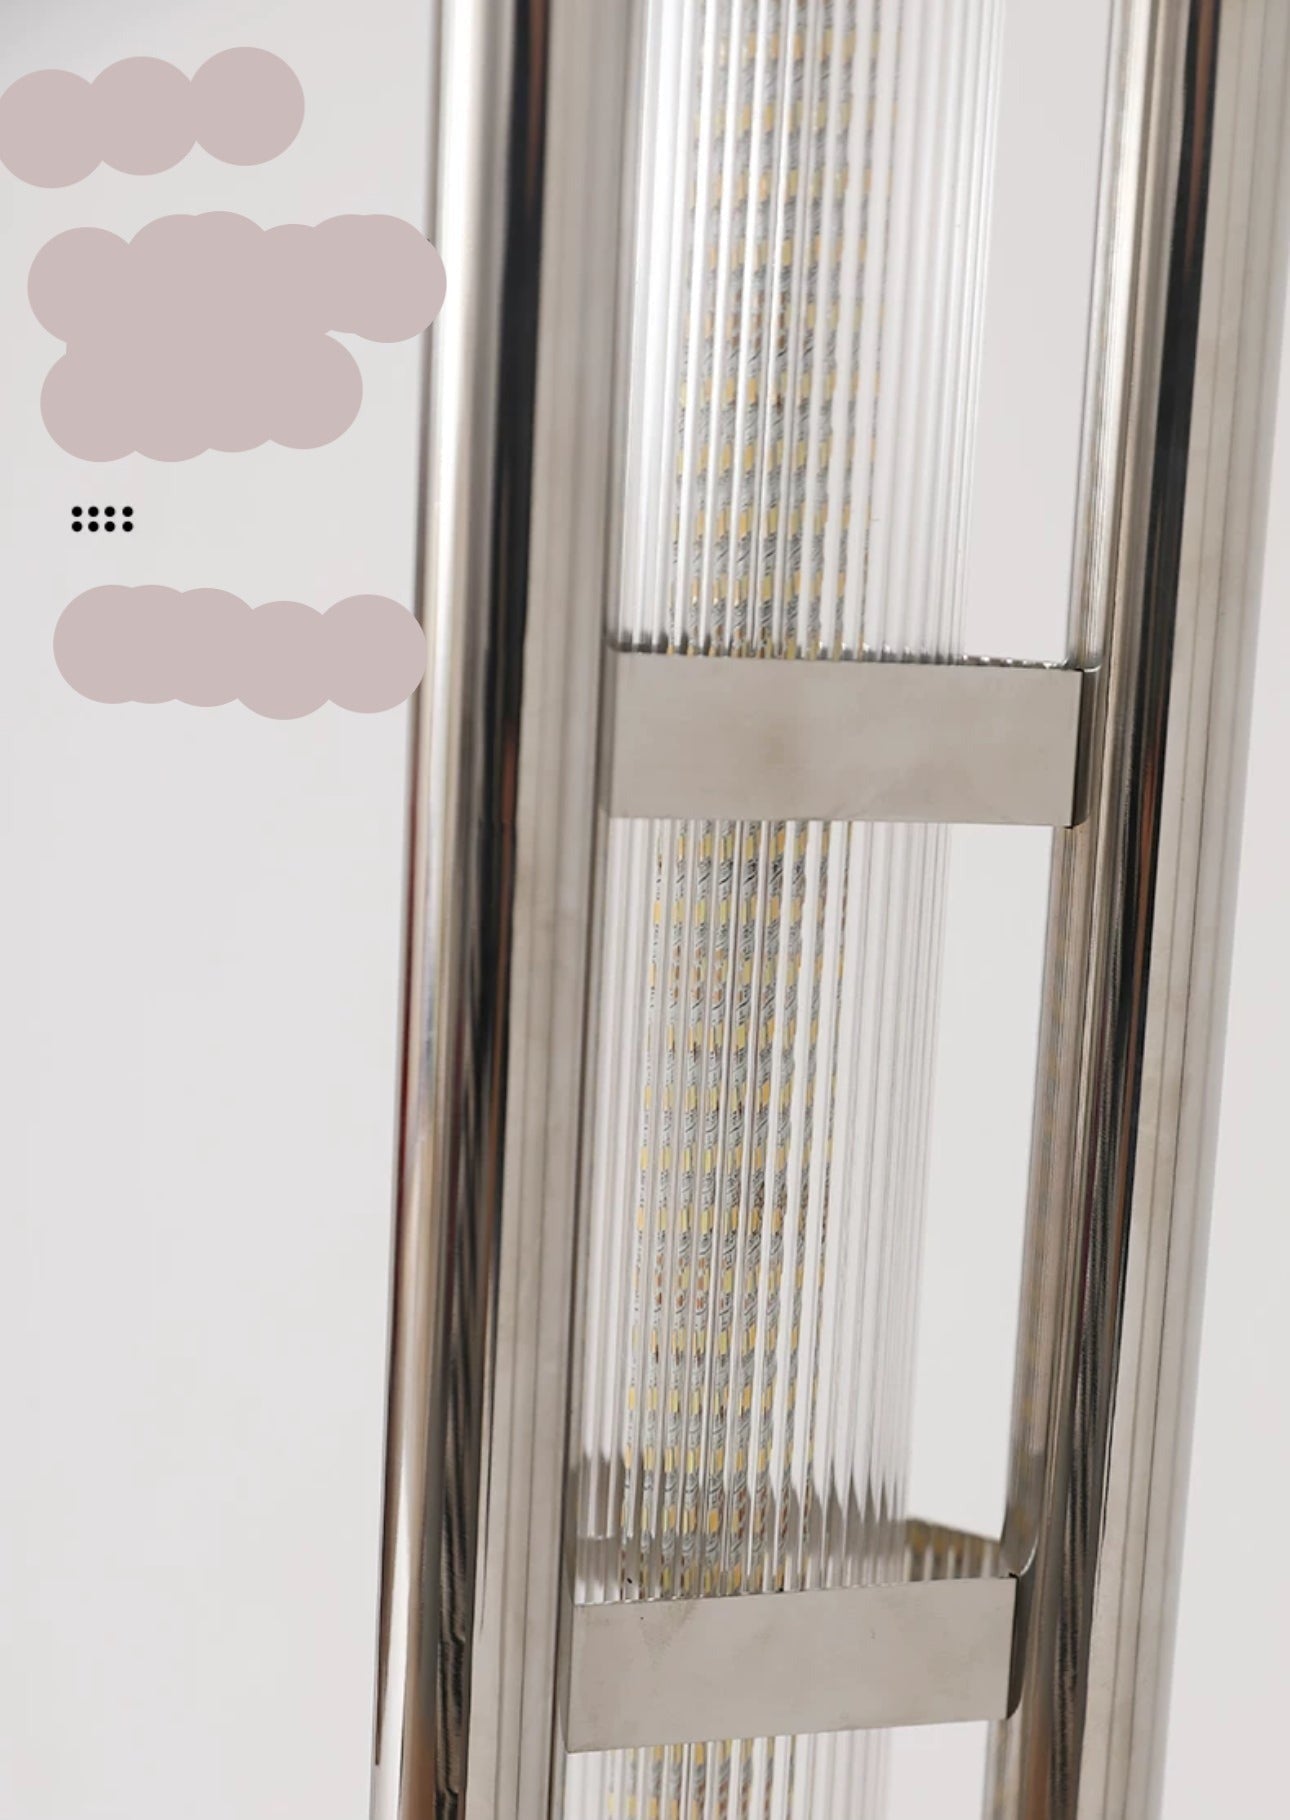 Stainless Steel Led Tower Lamp - 200cm Tall Sleek Modern Design - Floor Lamps